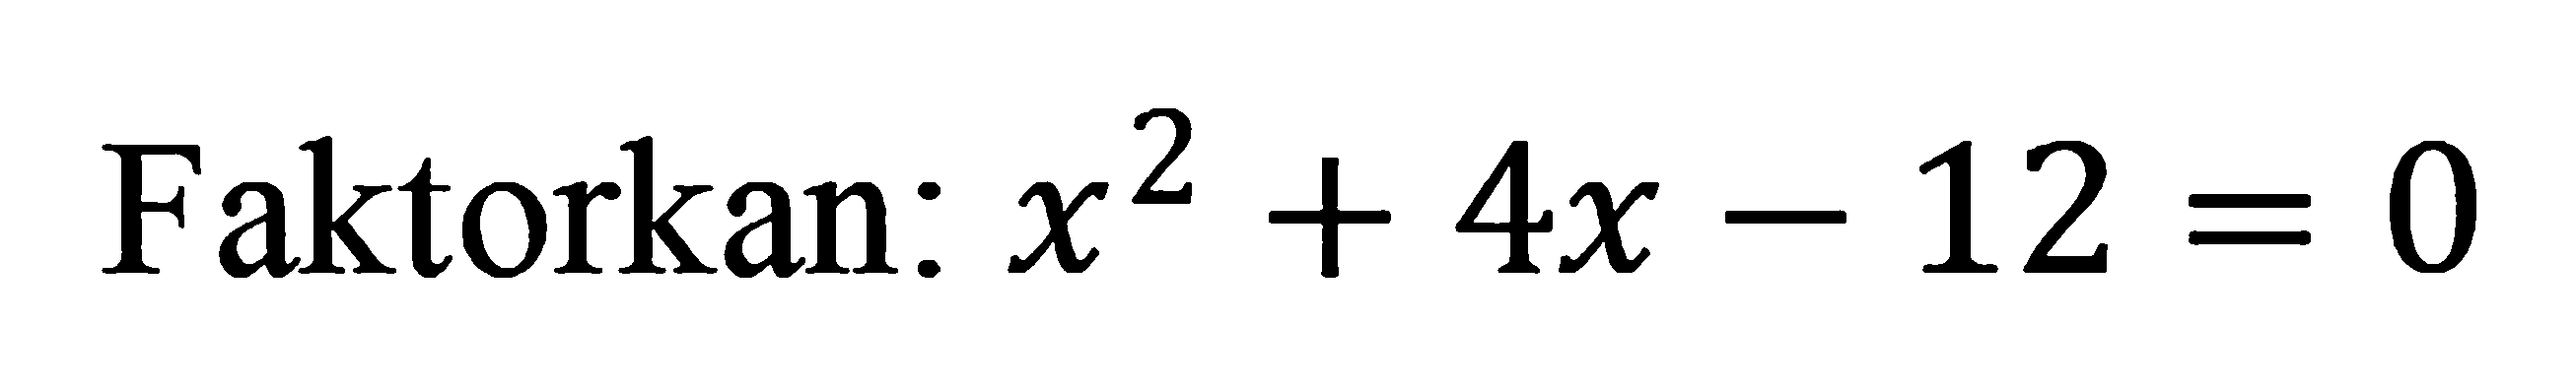 Faktorkan: x^2 + 4x - 12 = 0